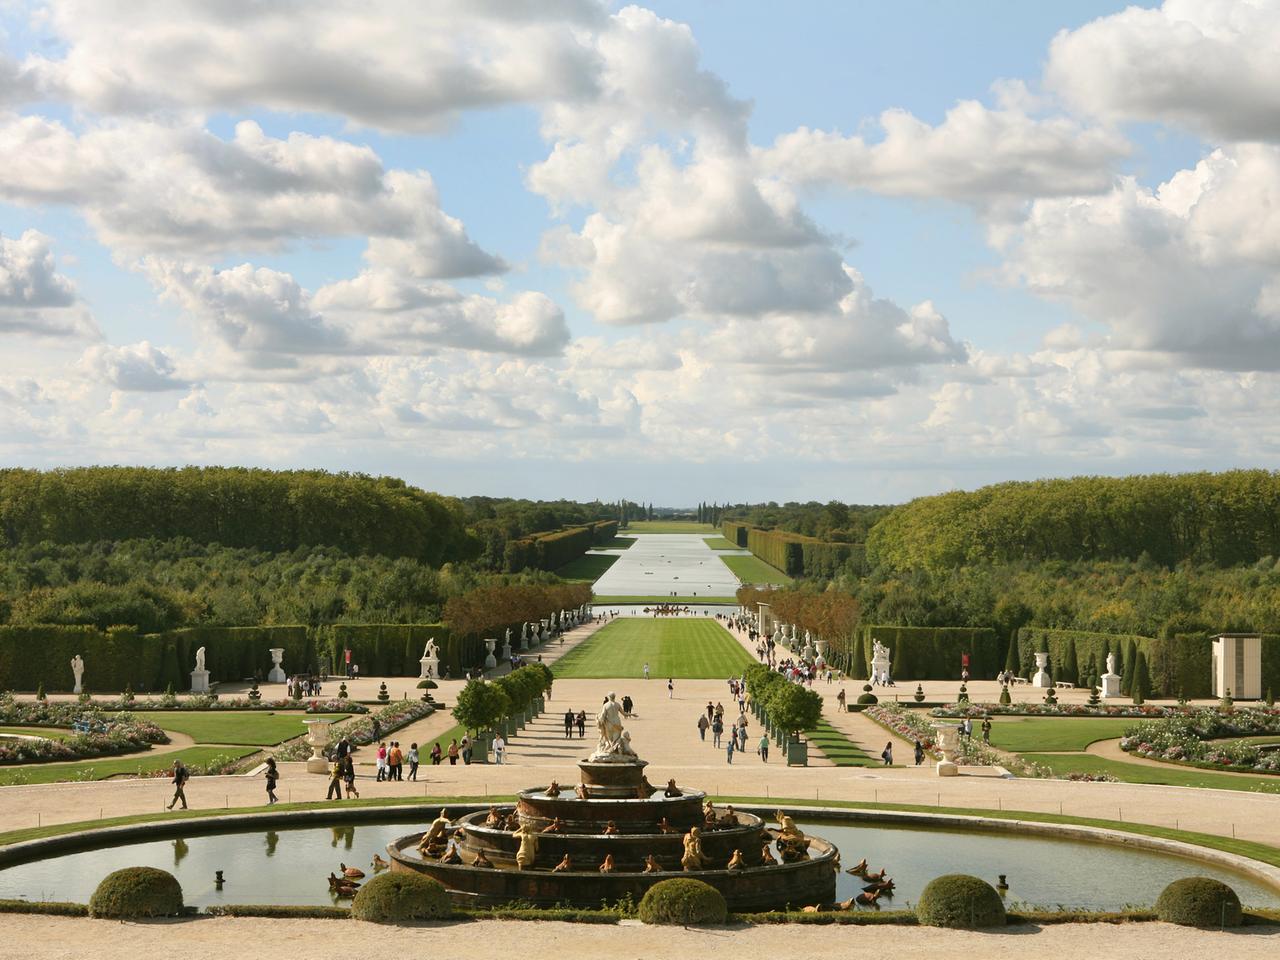 Besucher laufen durch die Gärten der Schlossanlage von Versailles am Stadtrand von Paris, aufgenommen am 12.09.2008.